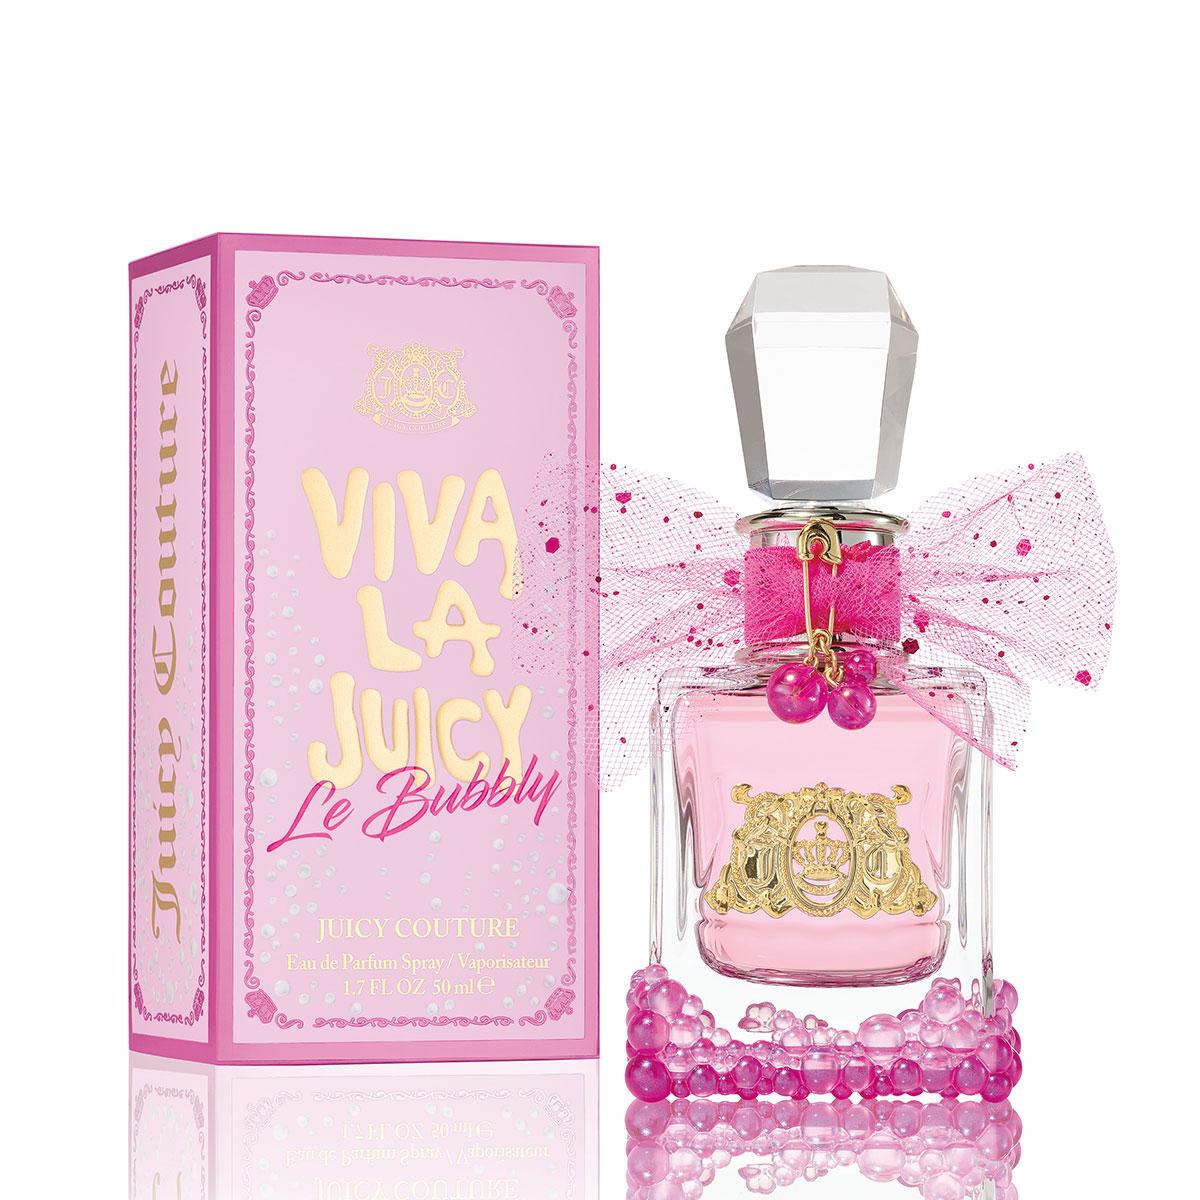 Juice Couture Viva La Juicy Le Bubbly Eau de Parfum 50ml - Feelunique